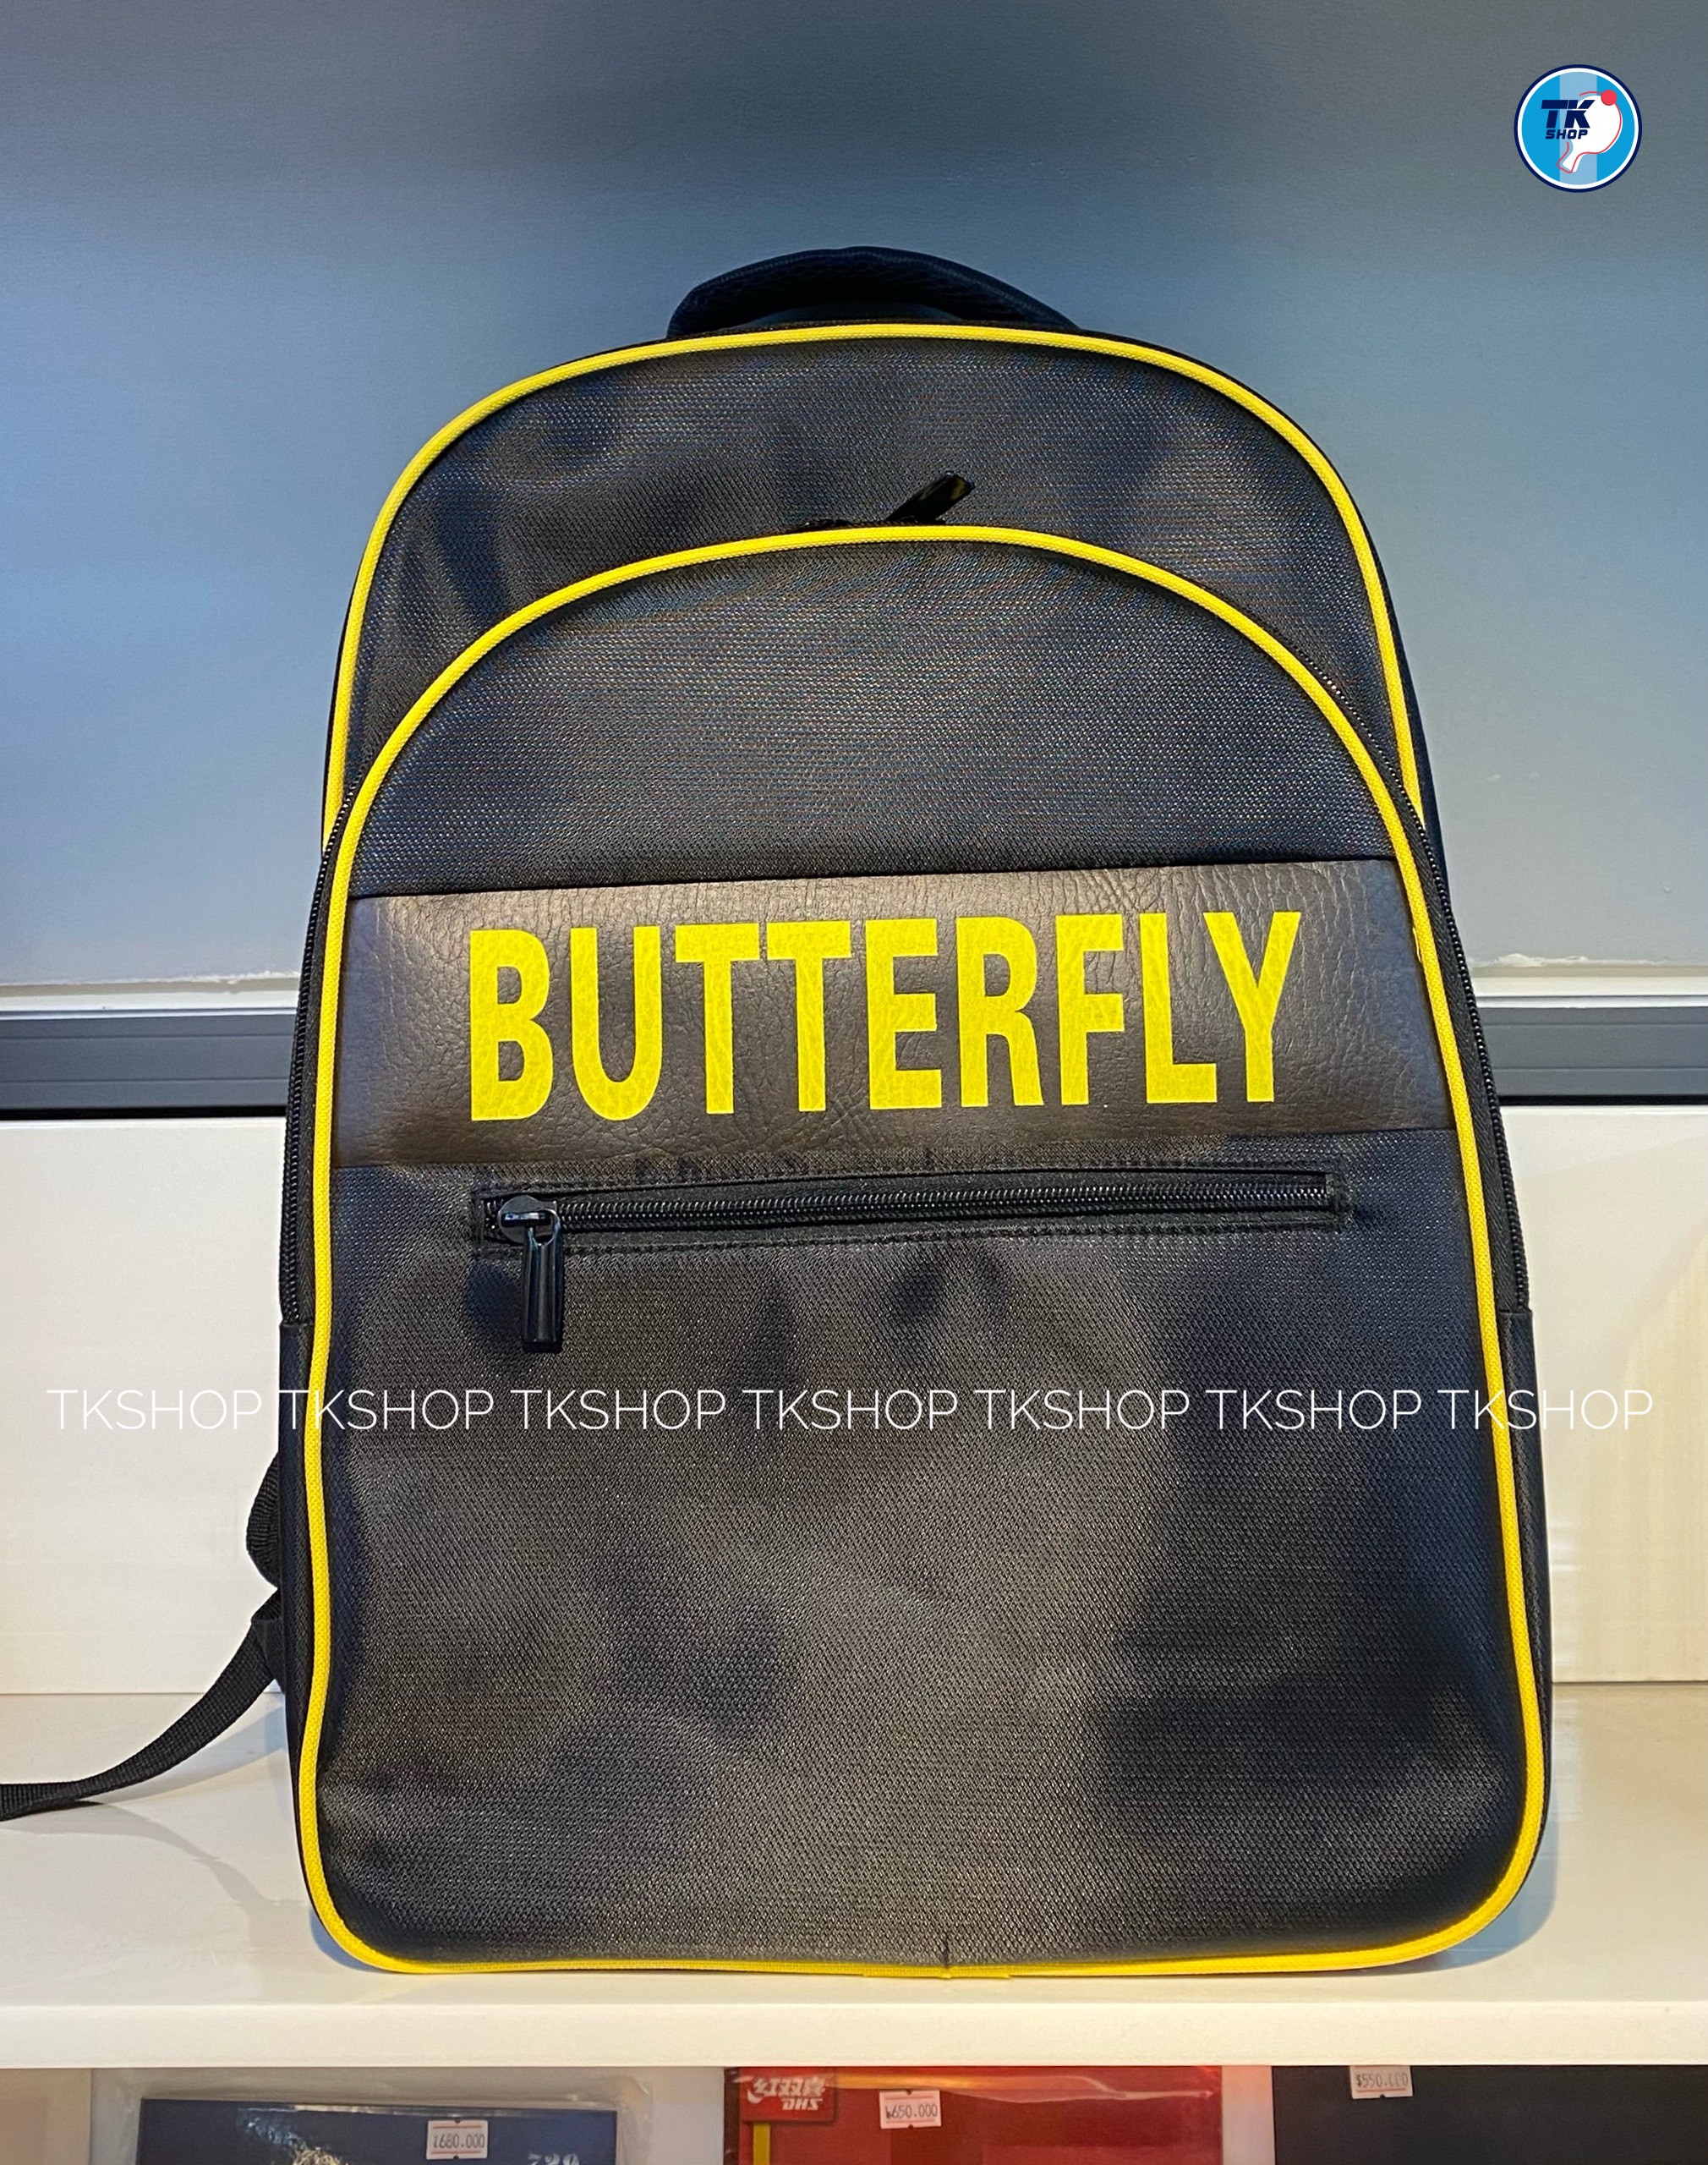 Balo Butterfly F1